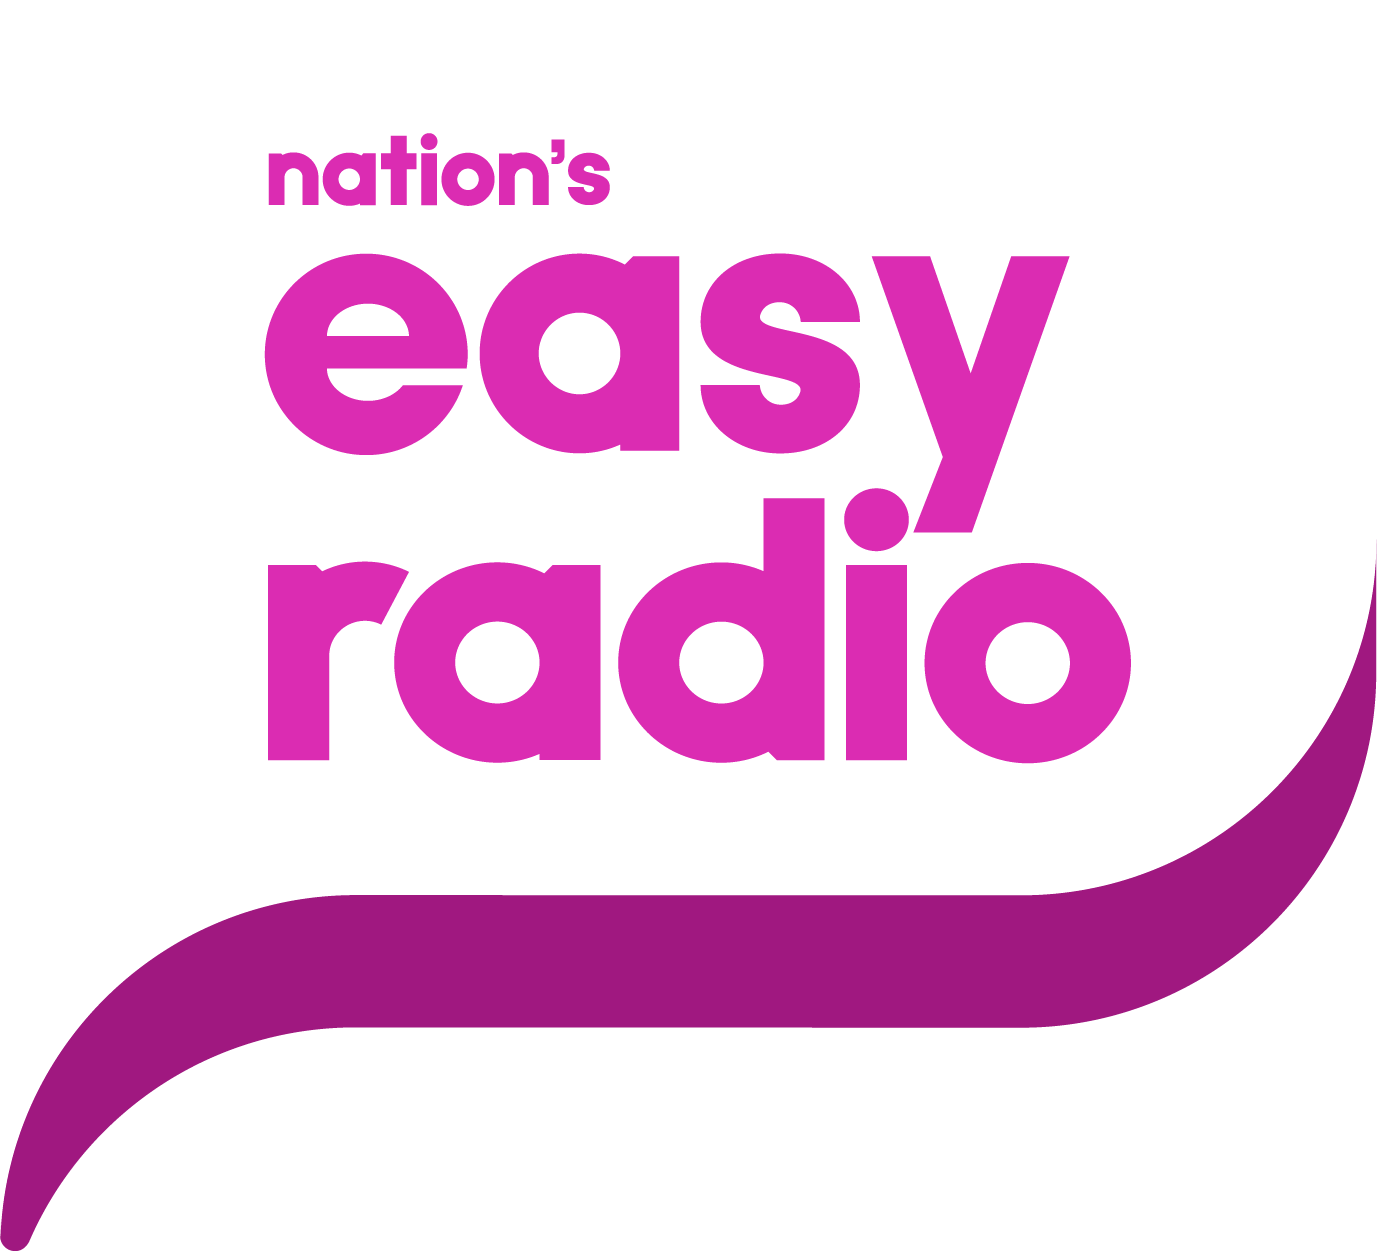 Easy Radio